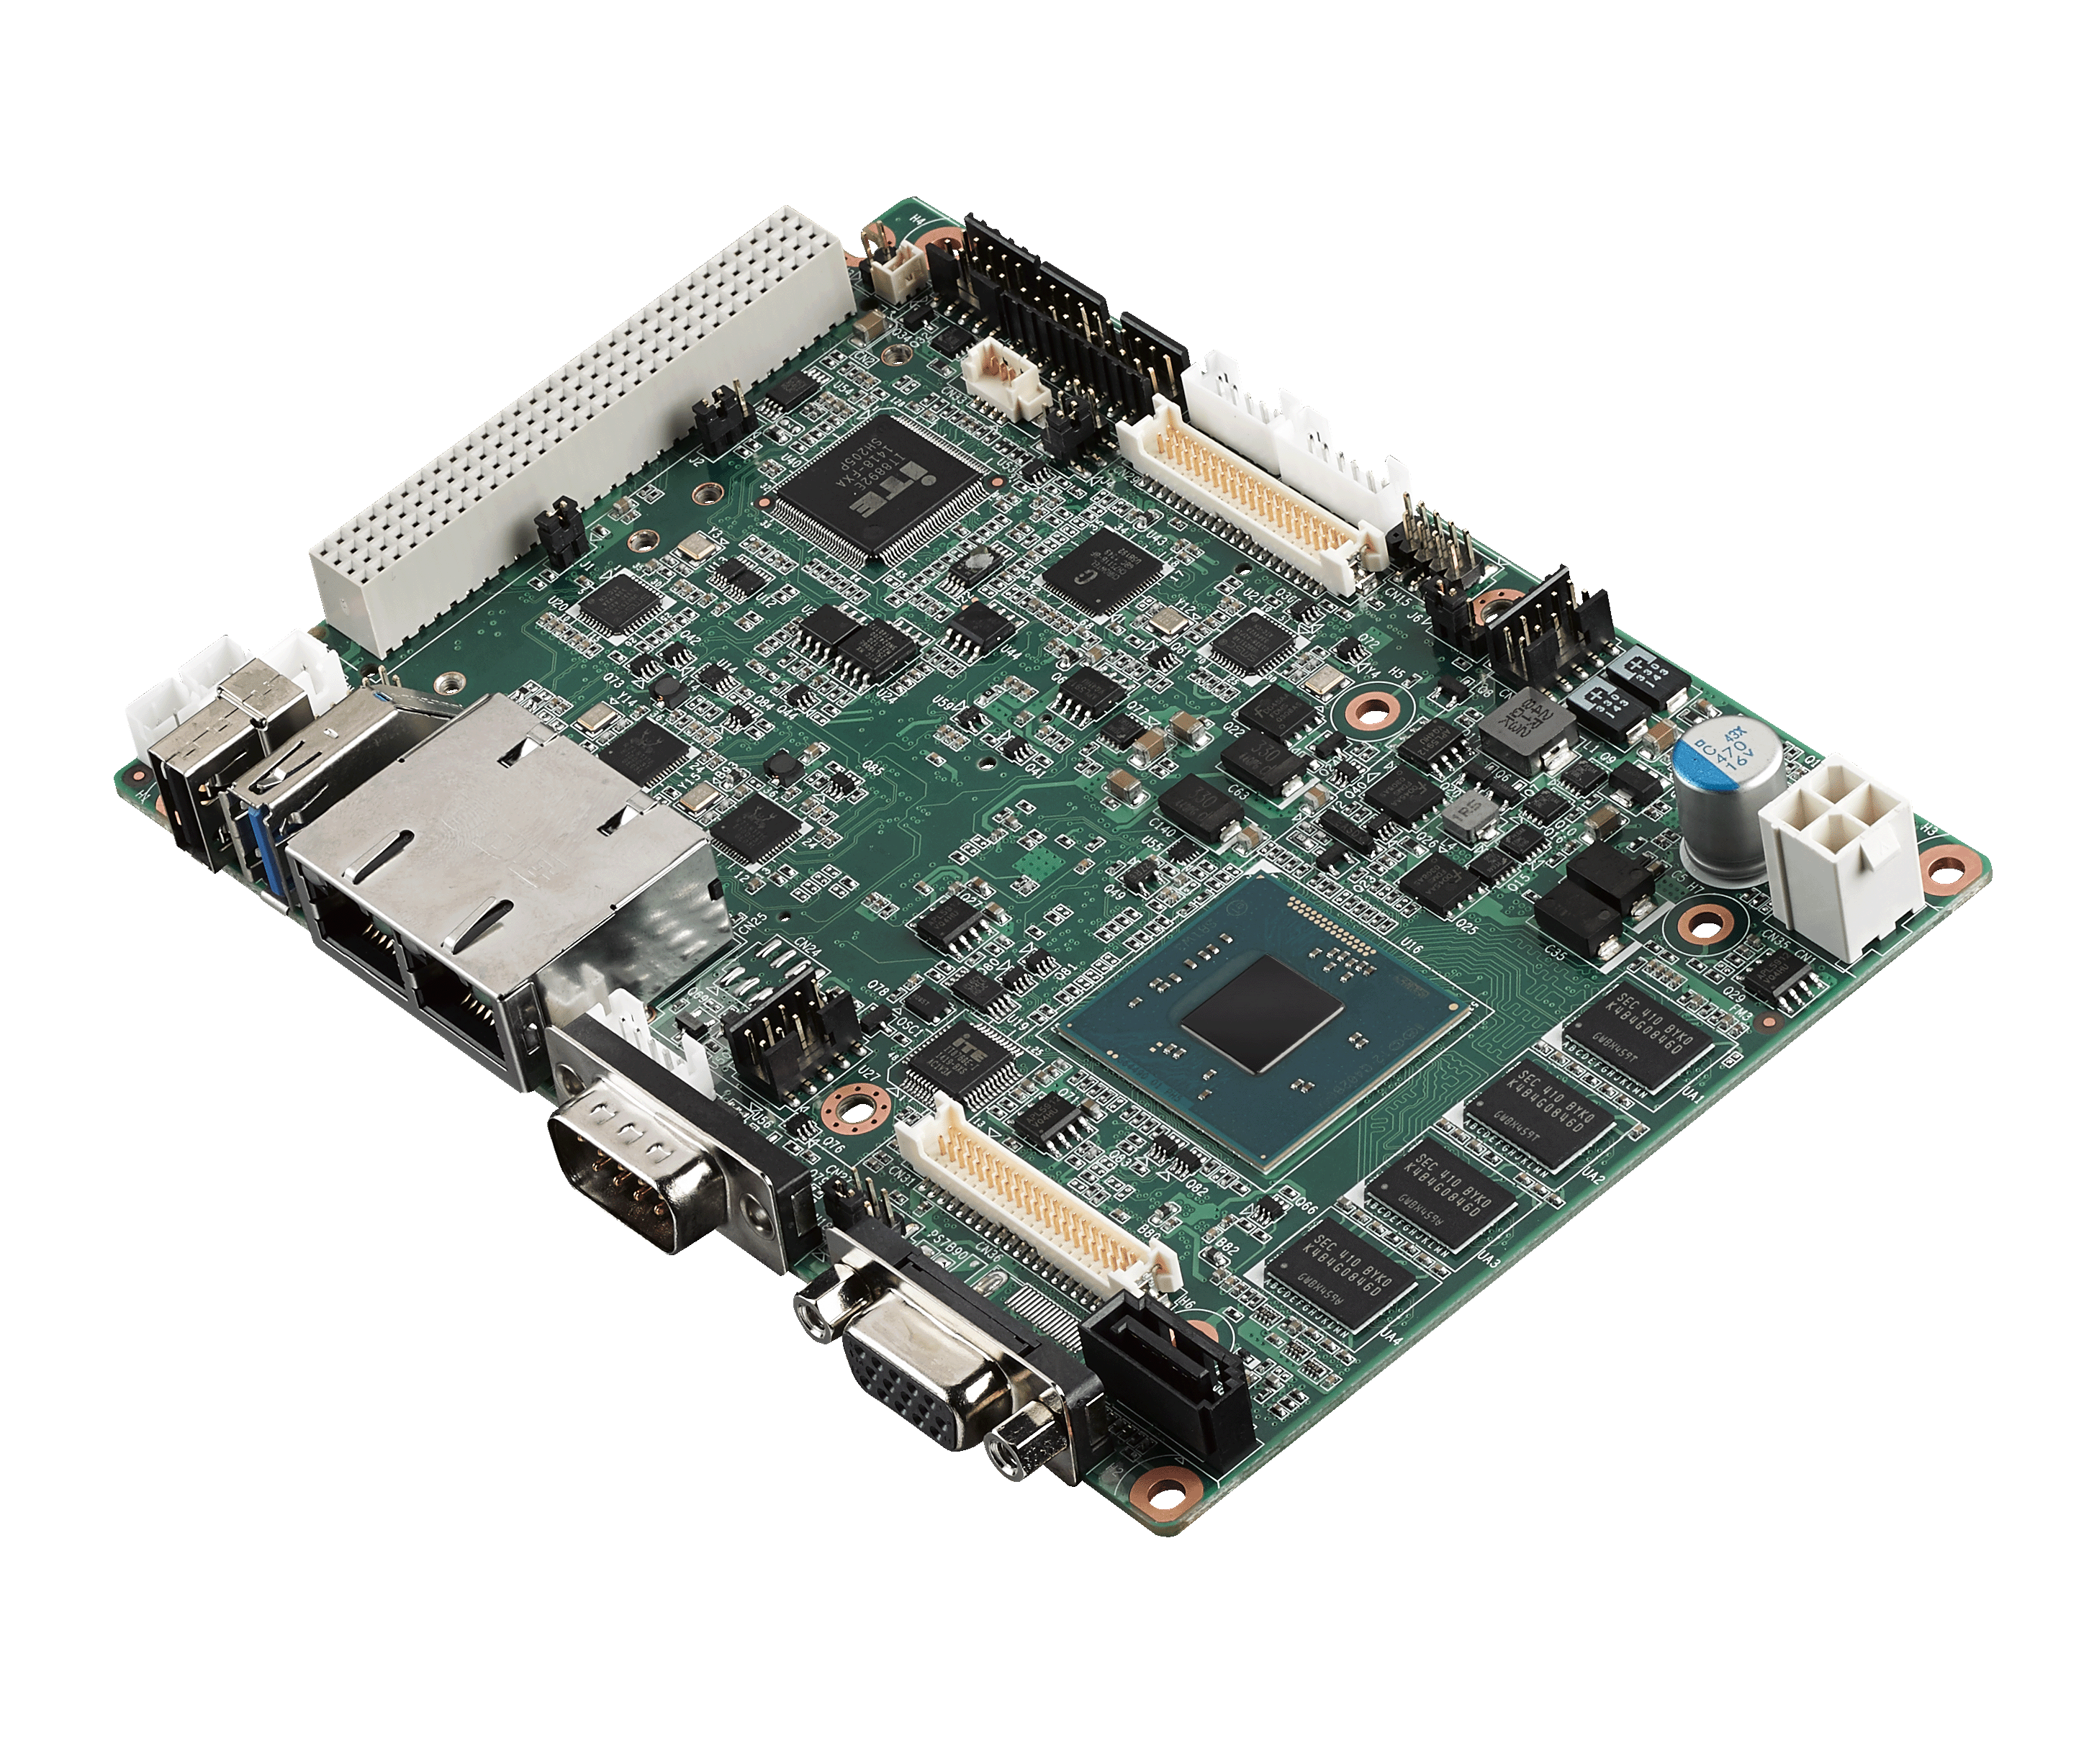 Intel<sup>®</sup> Atom E3825 3.5" Compact SBC with PCI-104 2G RAM/VGA+LVDS